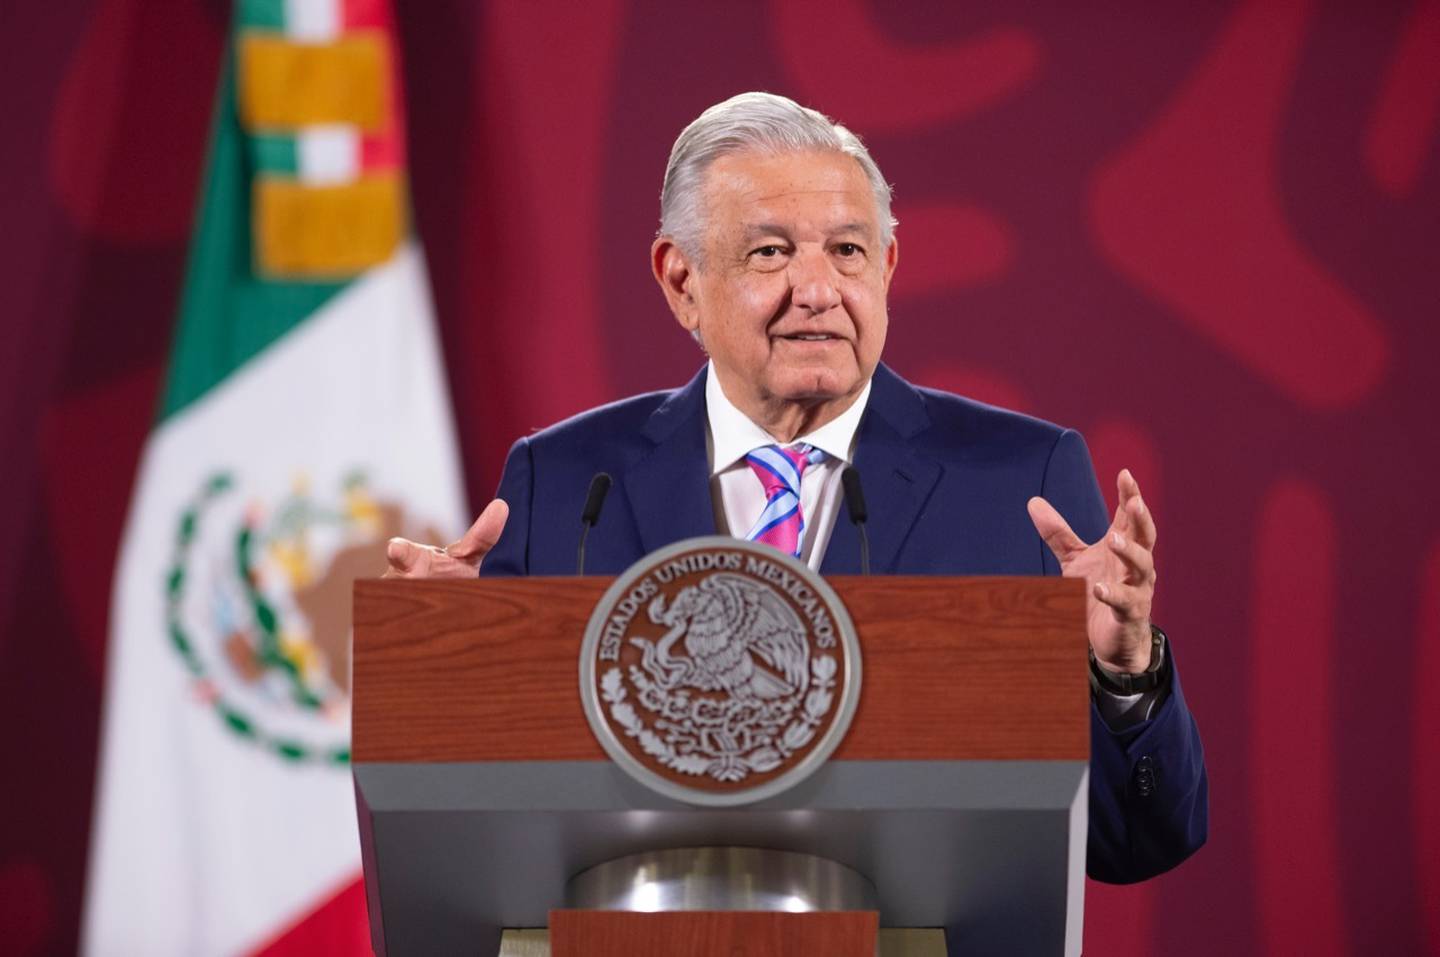 Andrés Manuel López Obrador, conocido como AMLO, hablra durante su conferencia de prensa el 6 de abril de 2022 (Presidencia)